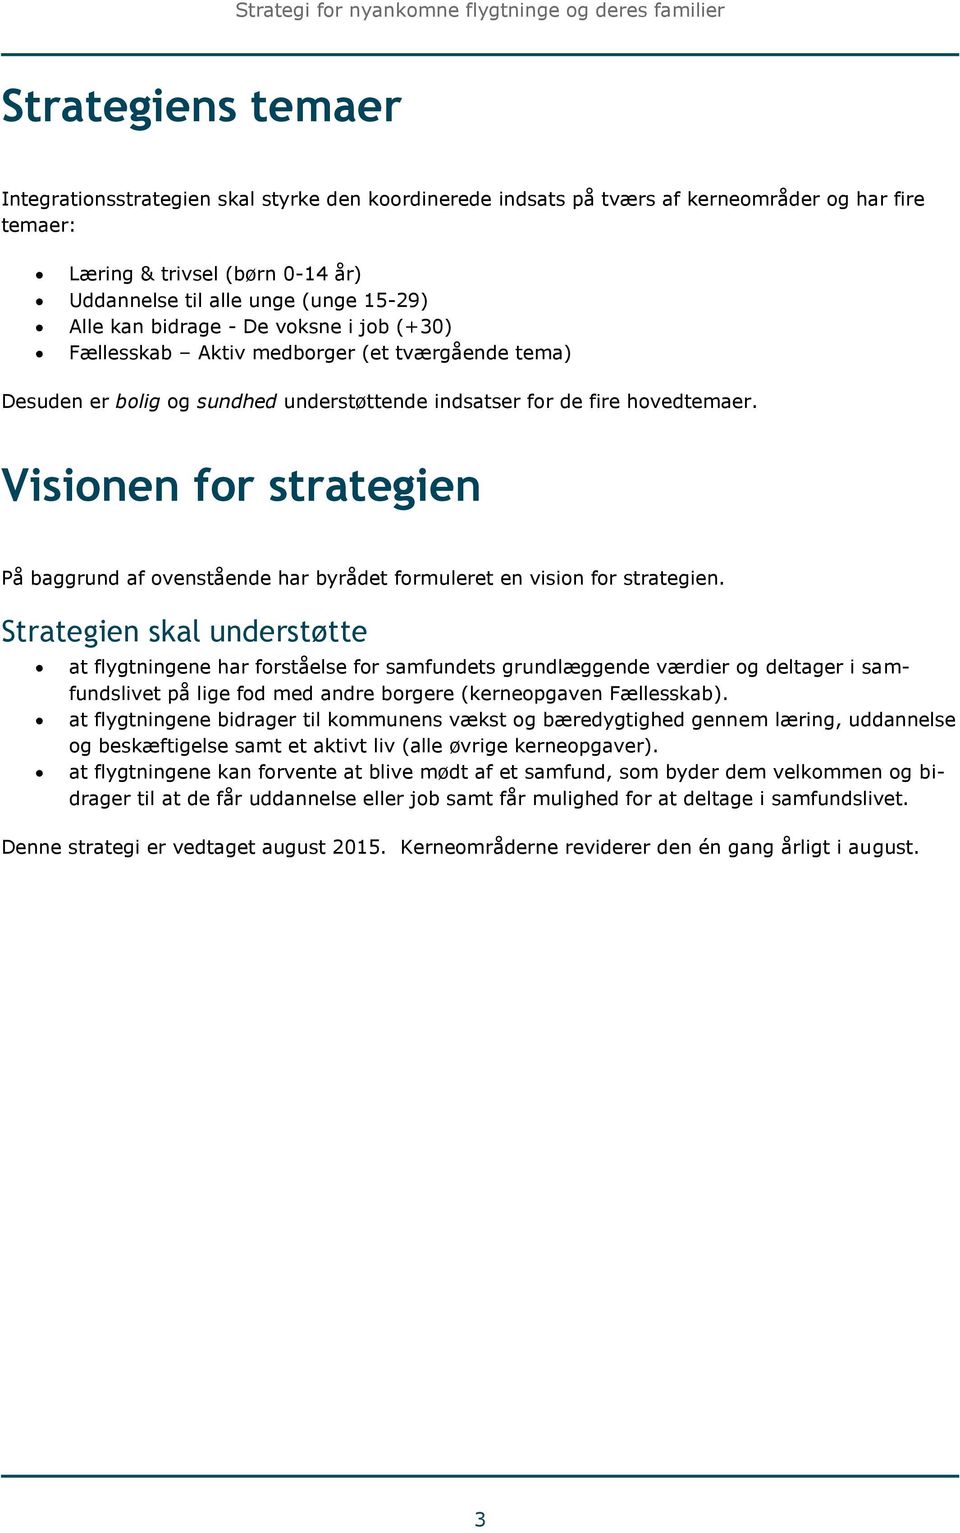 Visionen for strategien På baggrund af ovenstående har byrådet formuleret en vision for strategien.